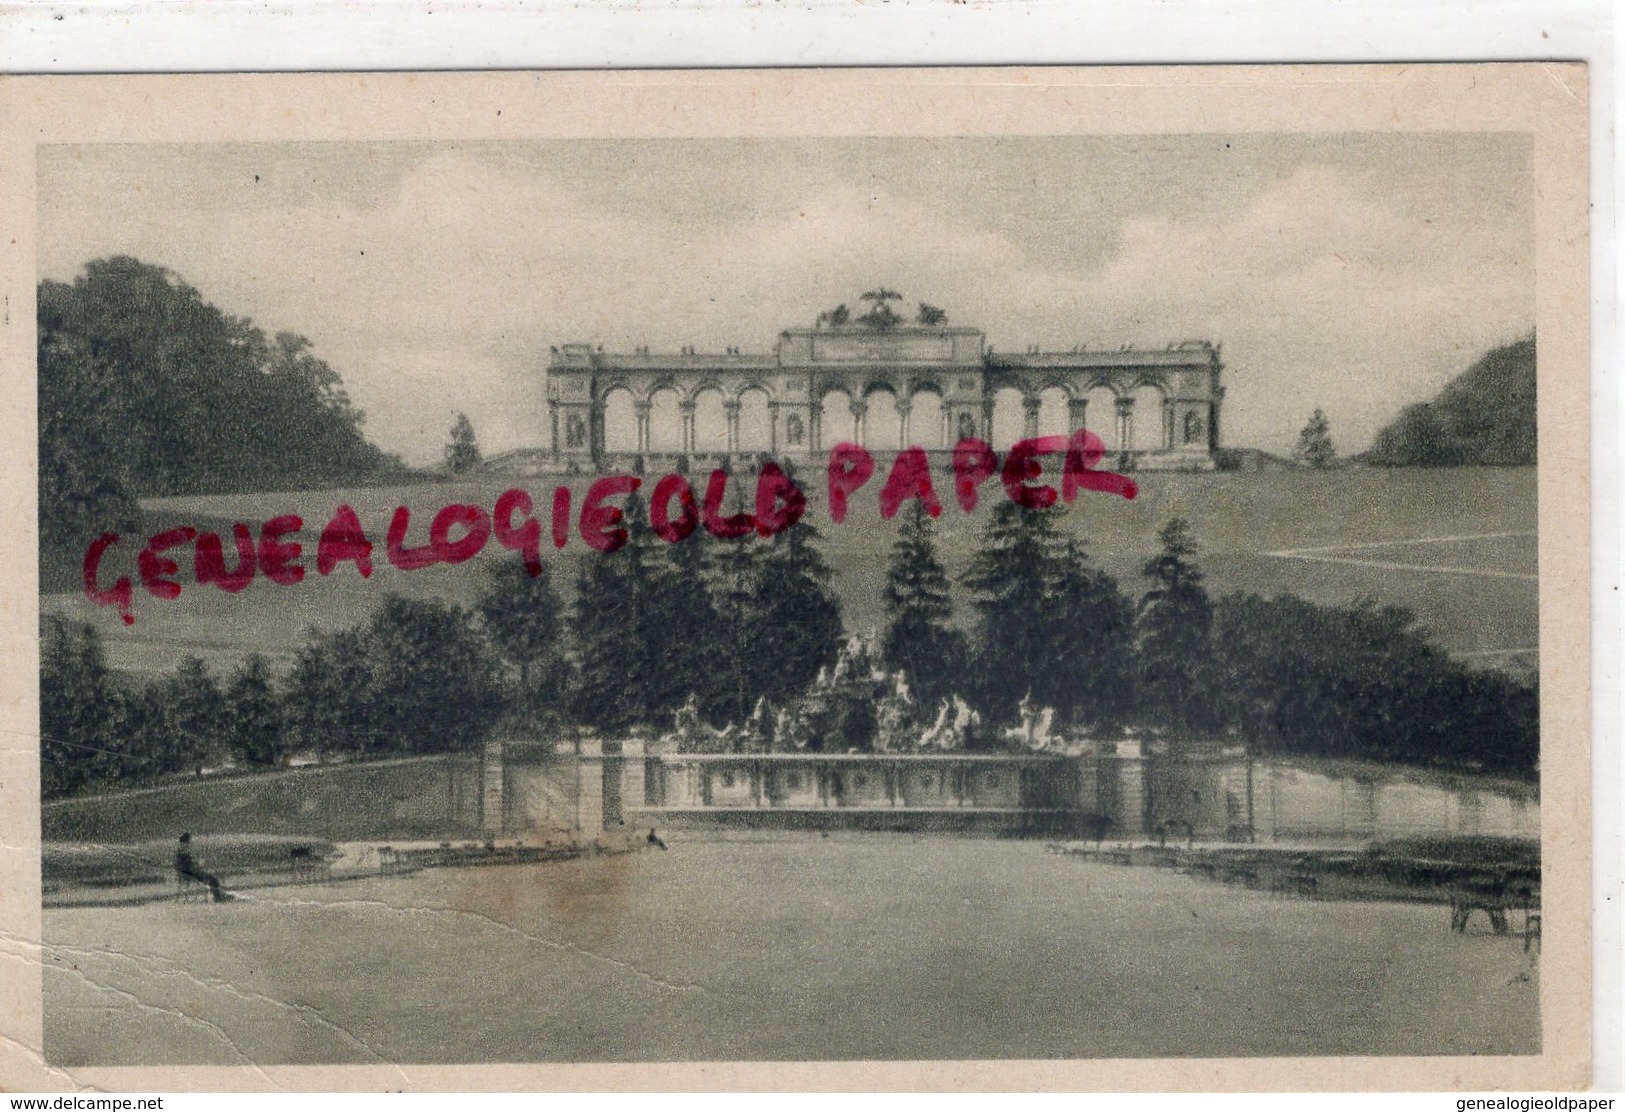 AUTRICHE-VIENNE- WIEN - SCHONBRUNN NEPTUNGROTTE MIT GLORIETTE - Schönbrunn Palace